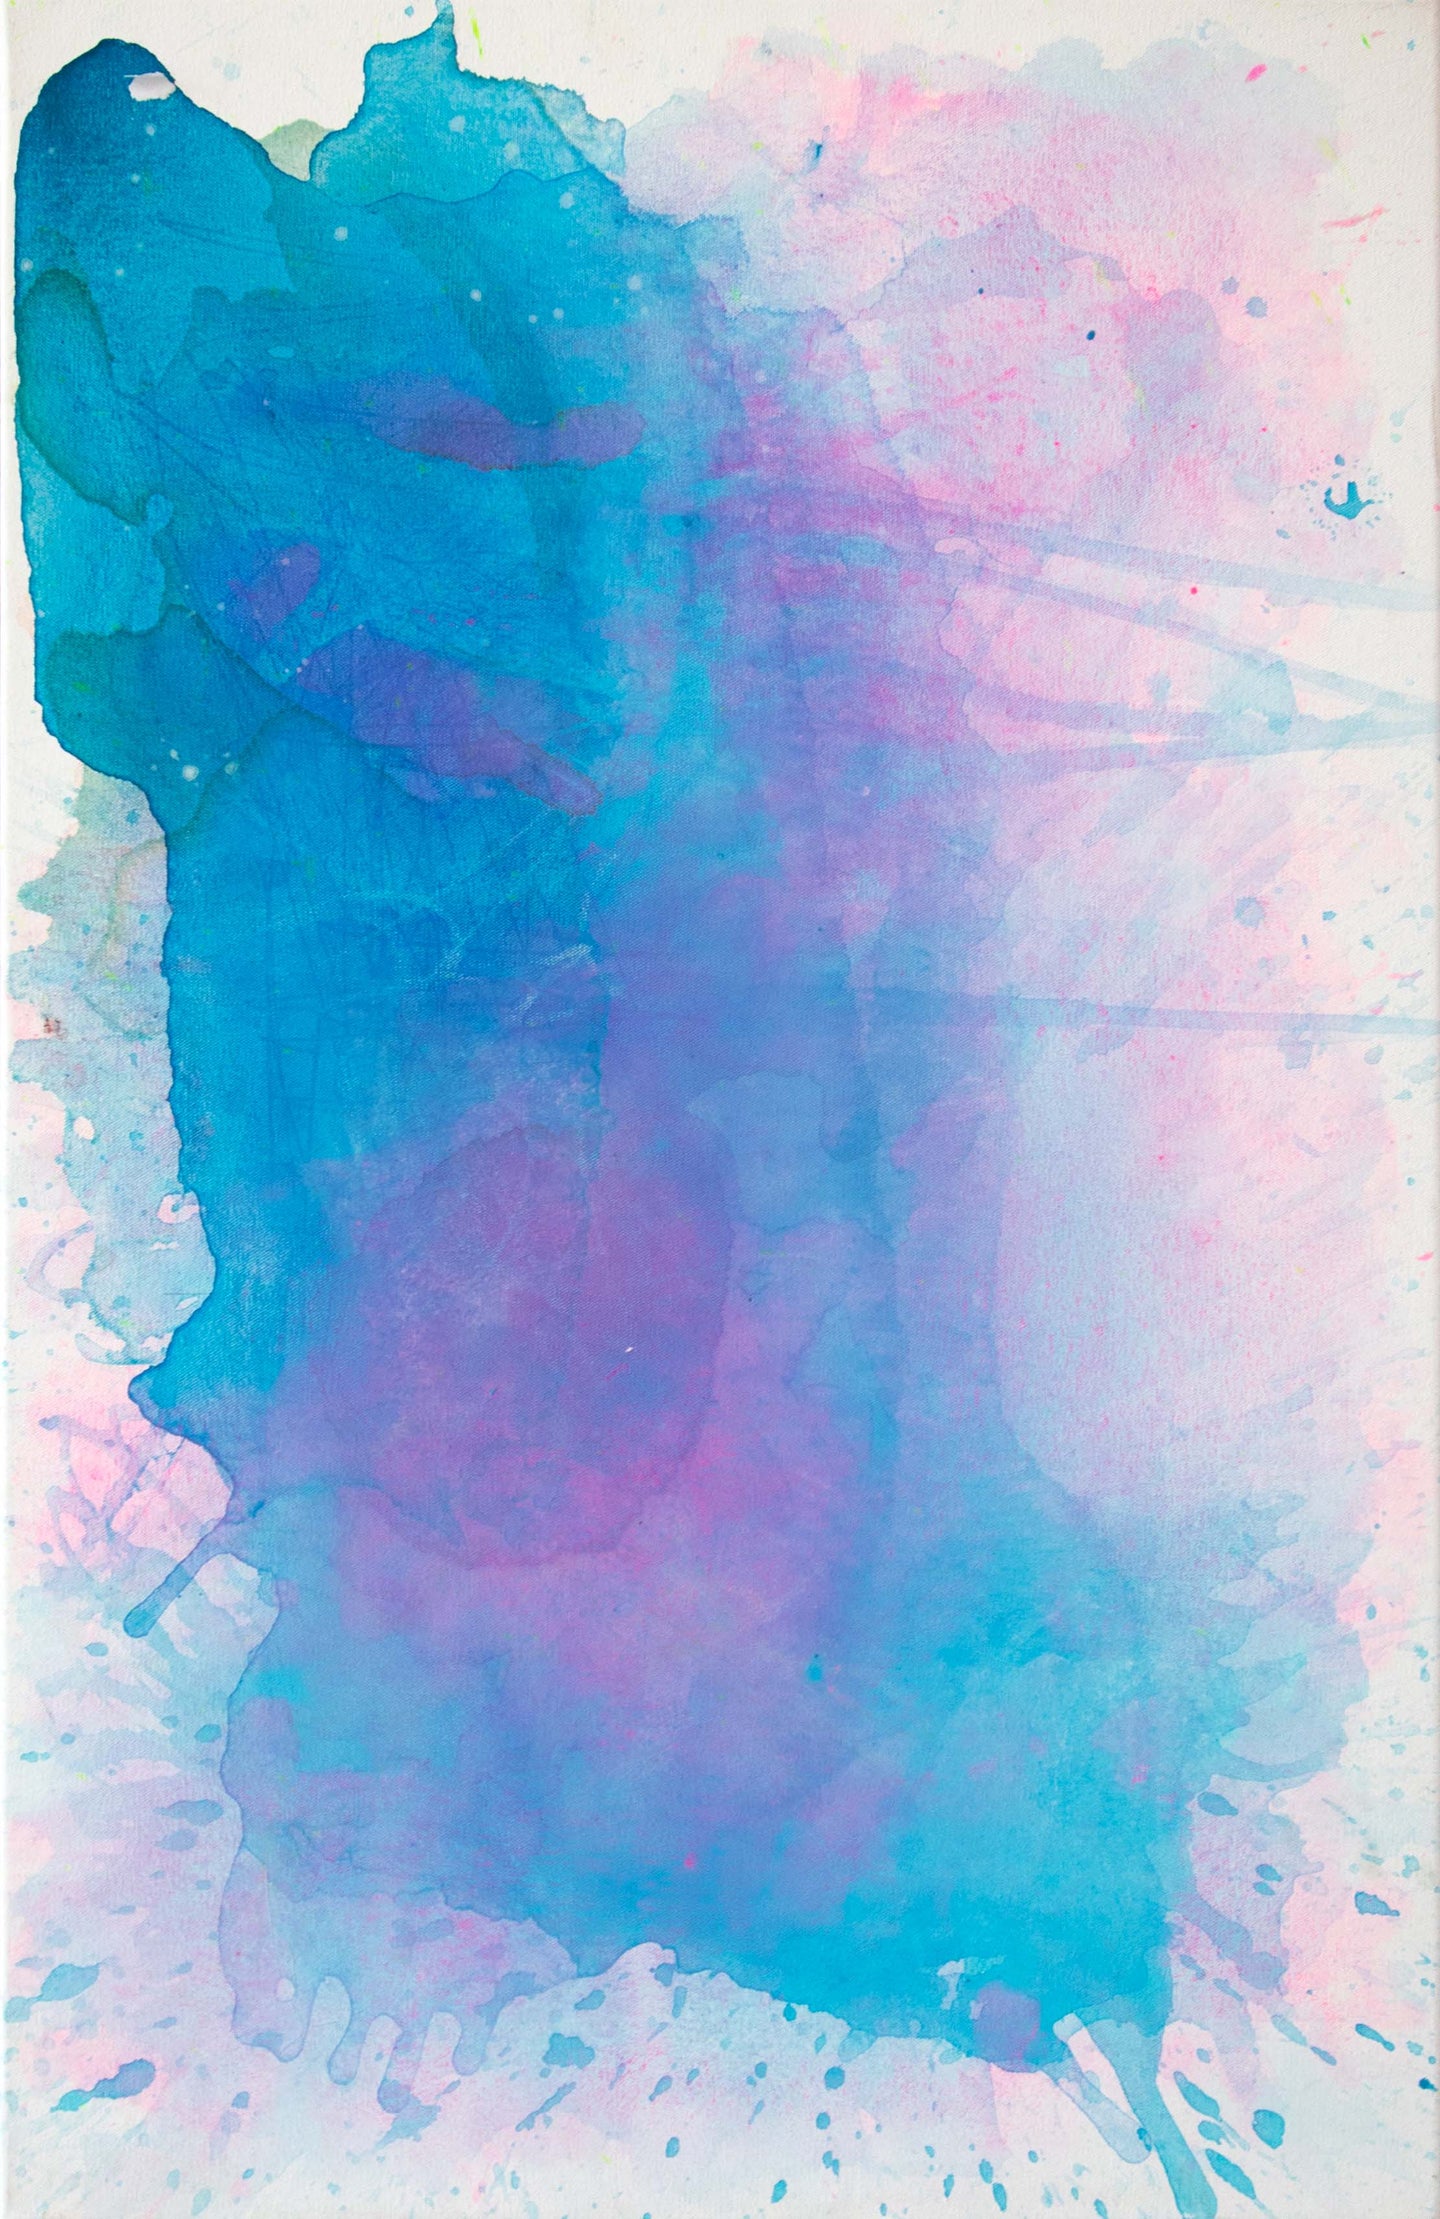 J. Steven Manolis' Light blue and pink abstract wall art, 